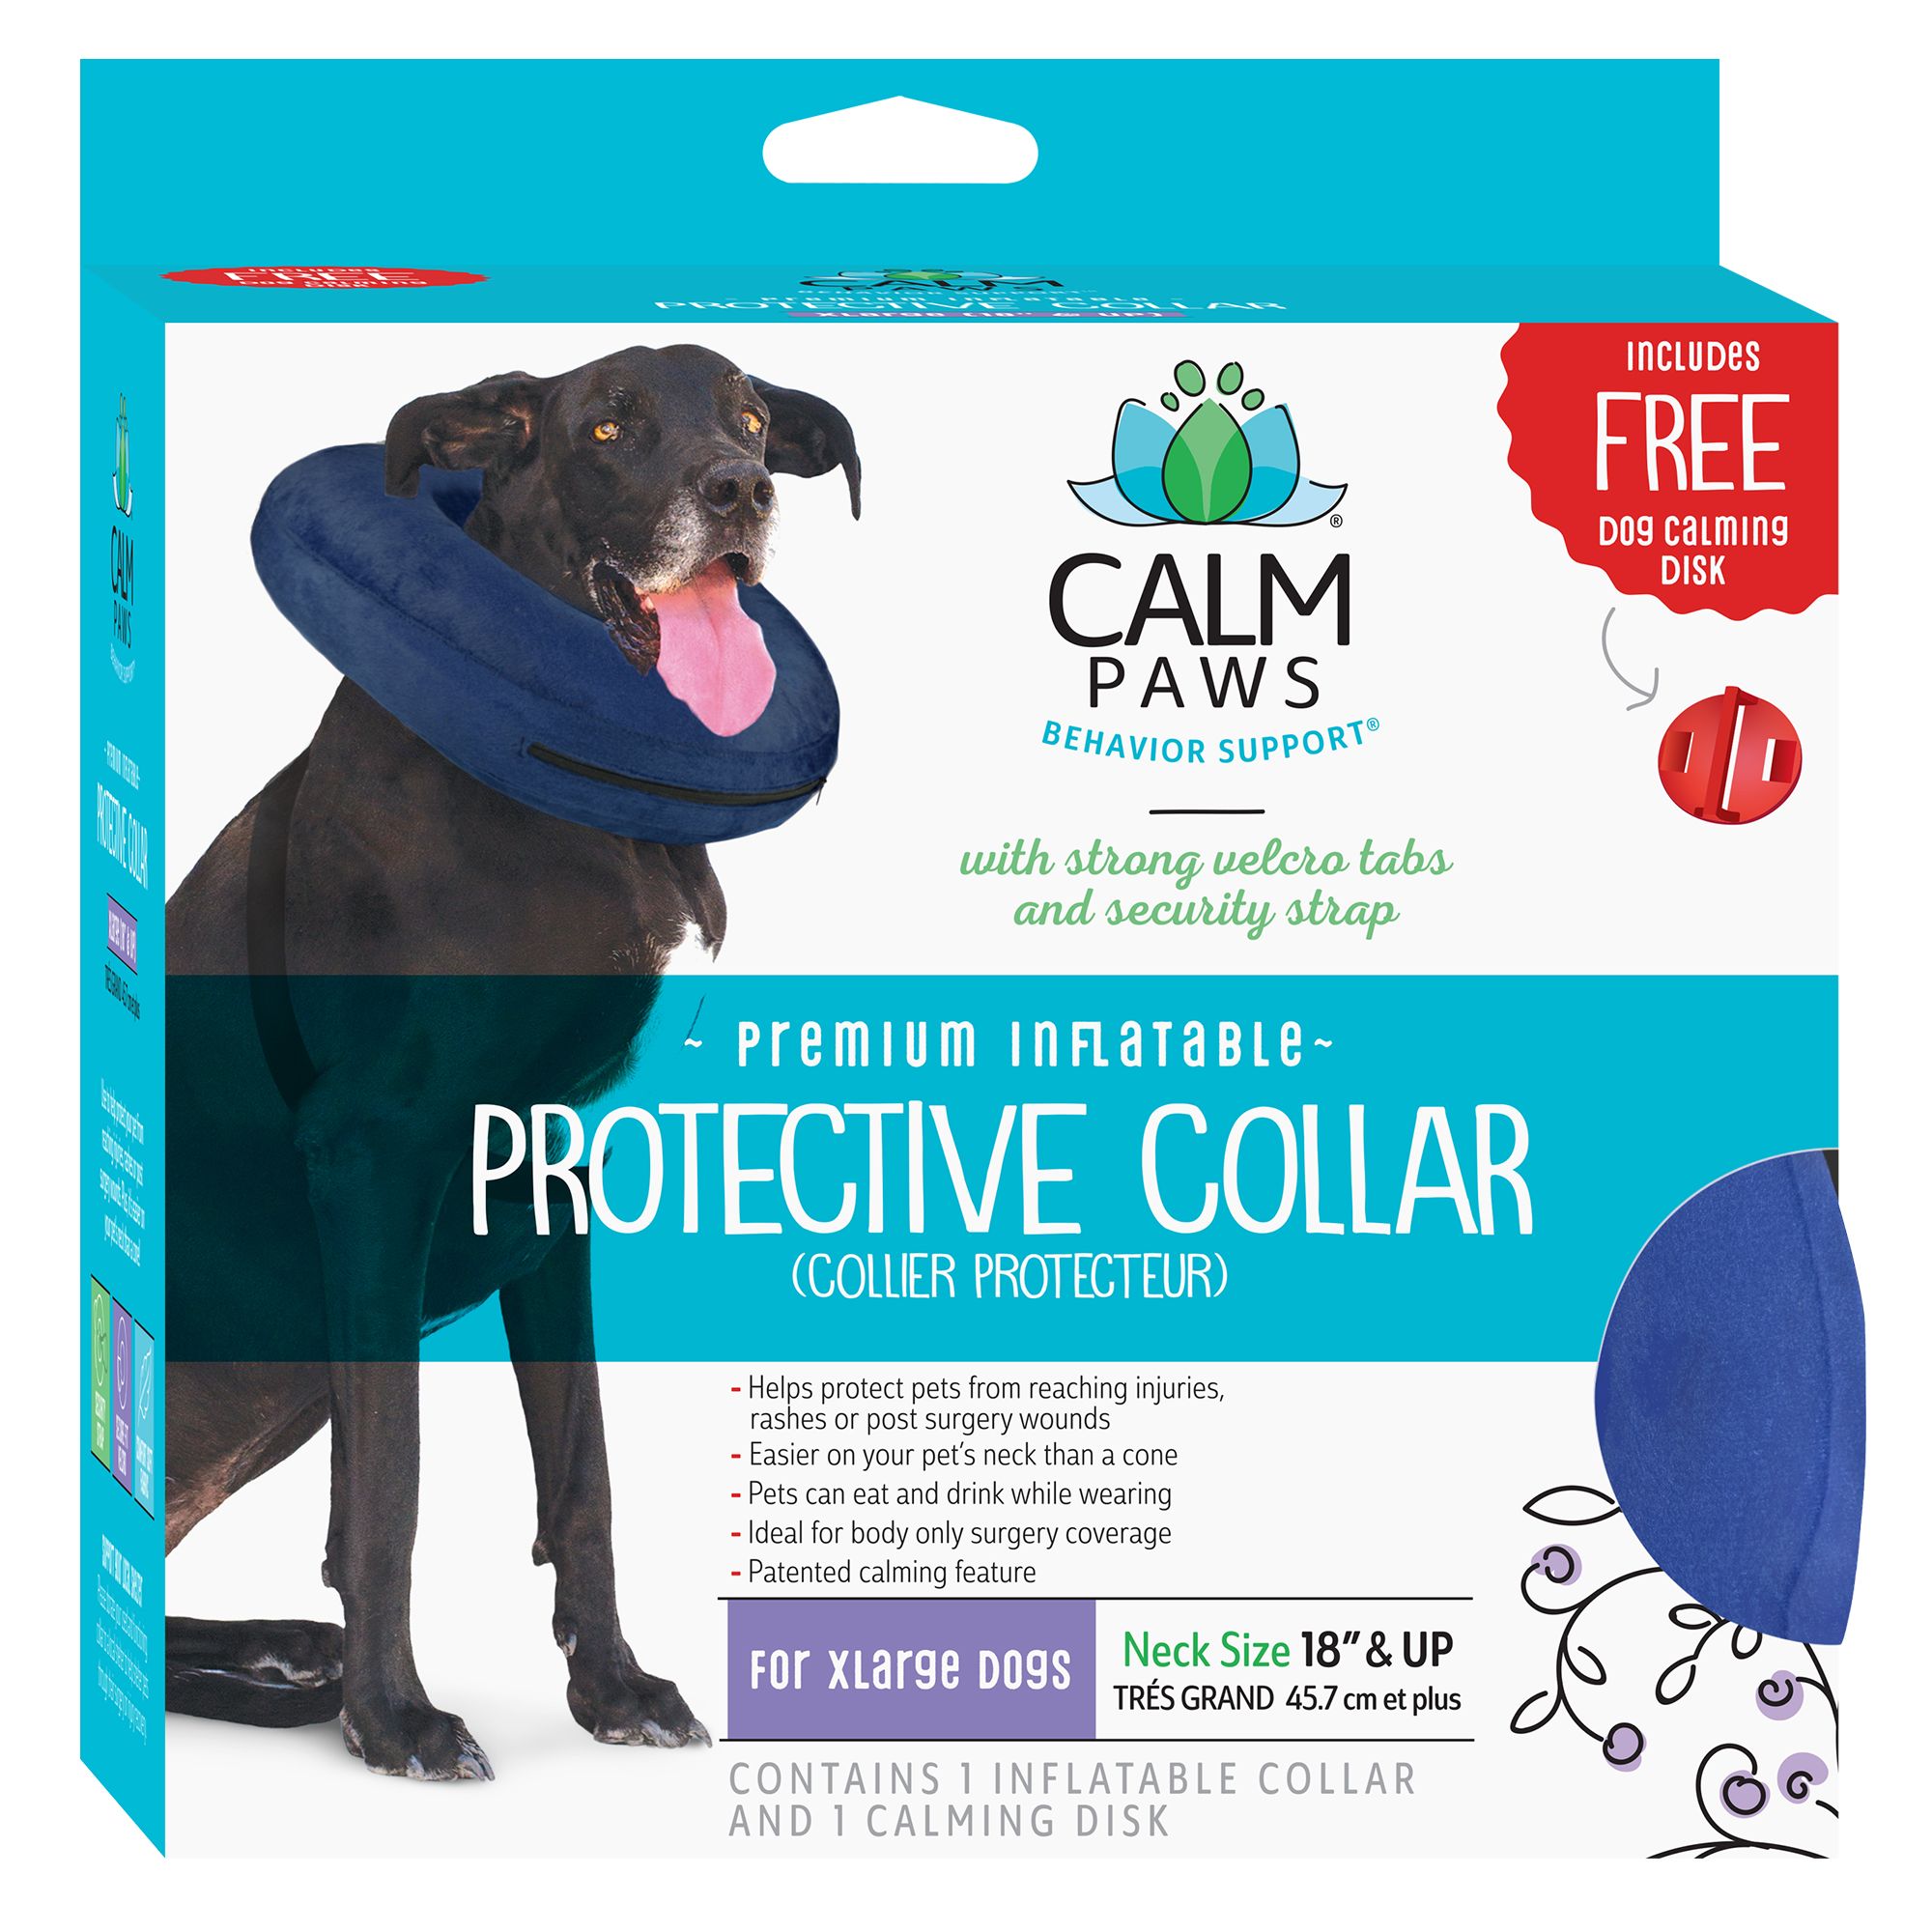 calm paws protective collar medium